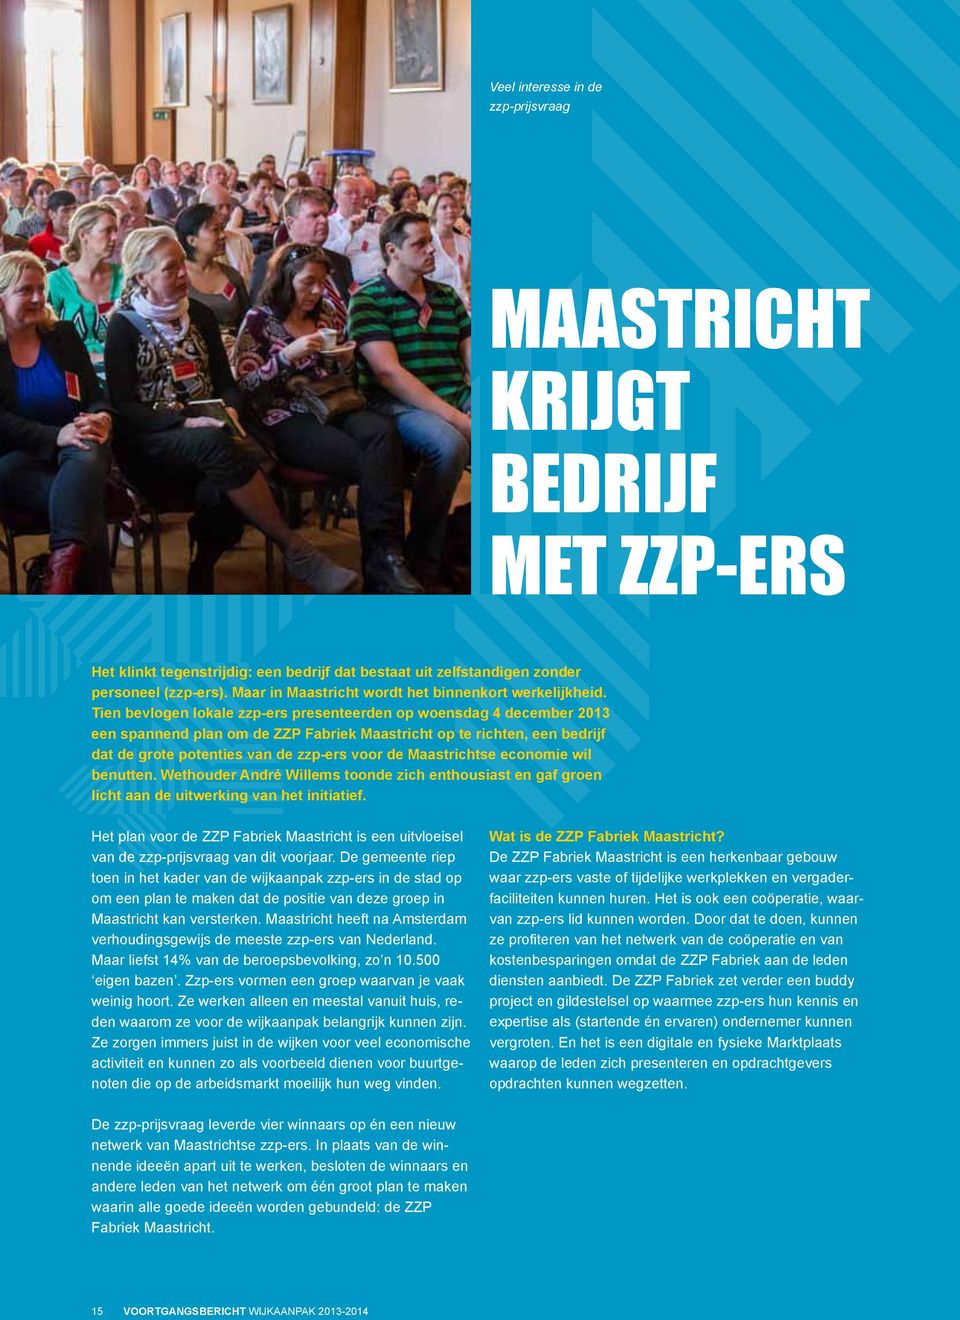 Tien bevlogen lokale zzp-ers presenteerden op woensdag 4 december 2013 een spannend plan om de ZZP Fabriek Maastricht op te richten, een bedrijf dat de grote potenties van de zzp-ers voor de